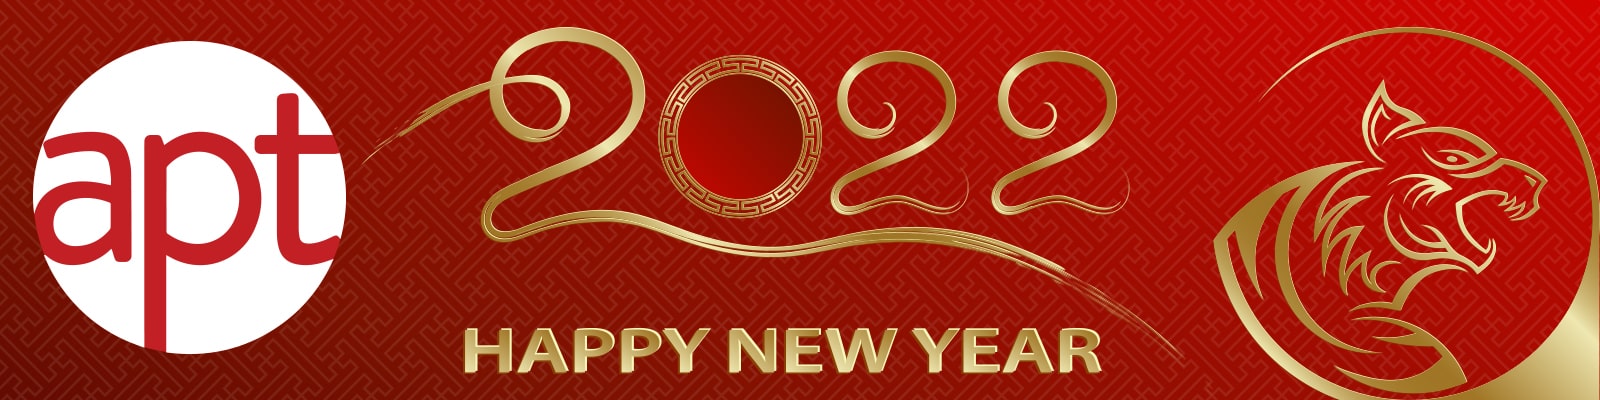 Chúc mừng năm mới 2022 - Học Viện APT